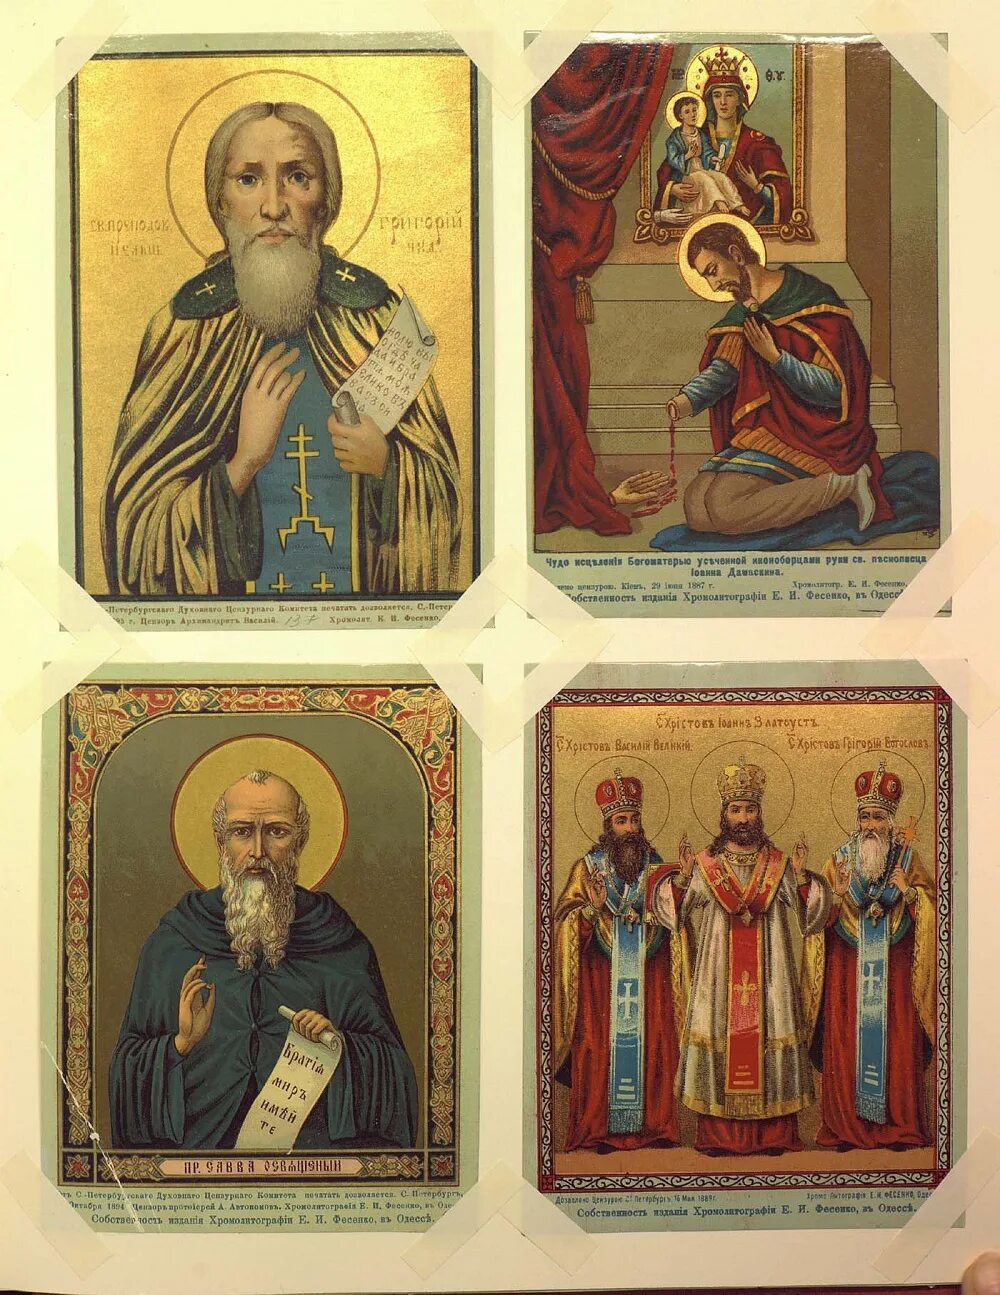 Иконы хромолитография Фесенко. Образы святых на иконах. Назвать православных святых